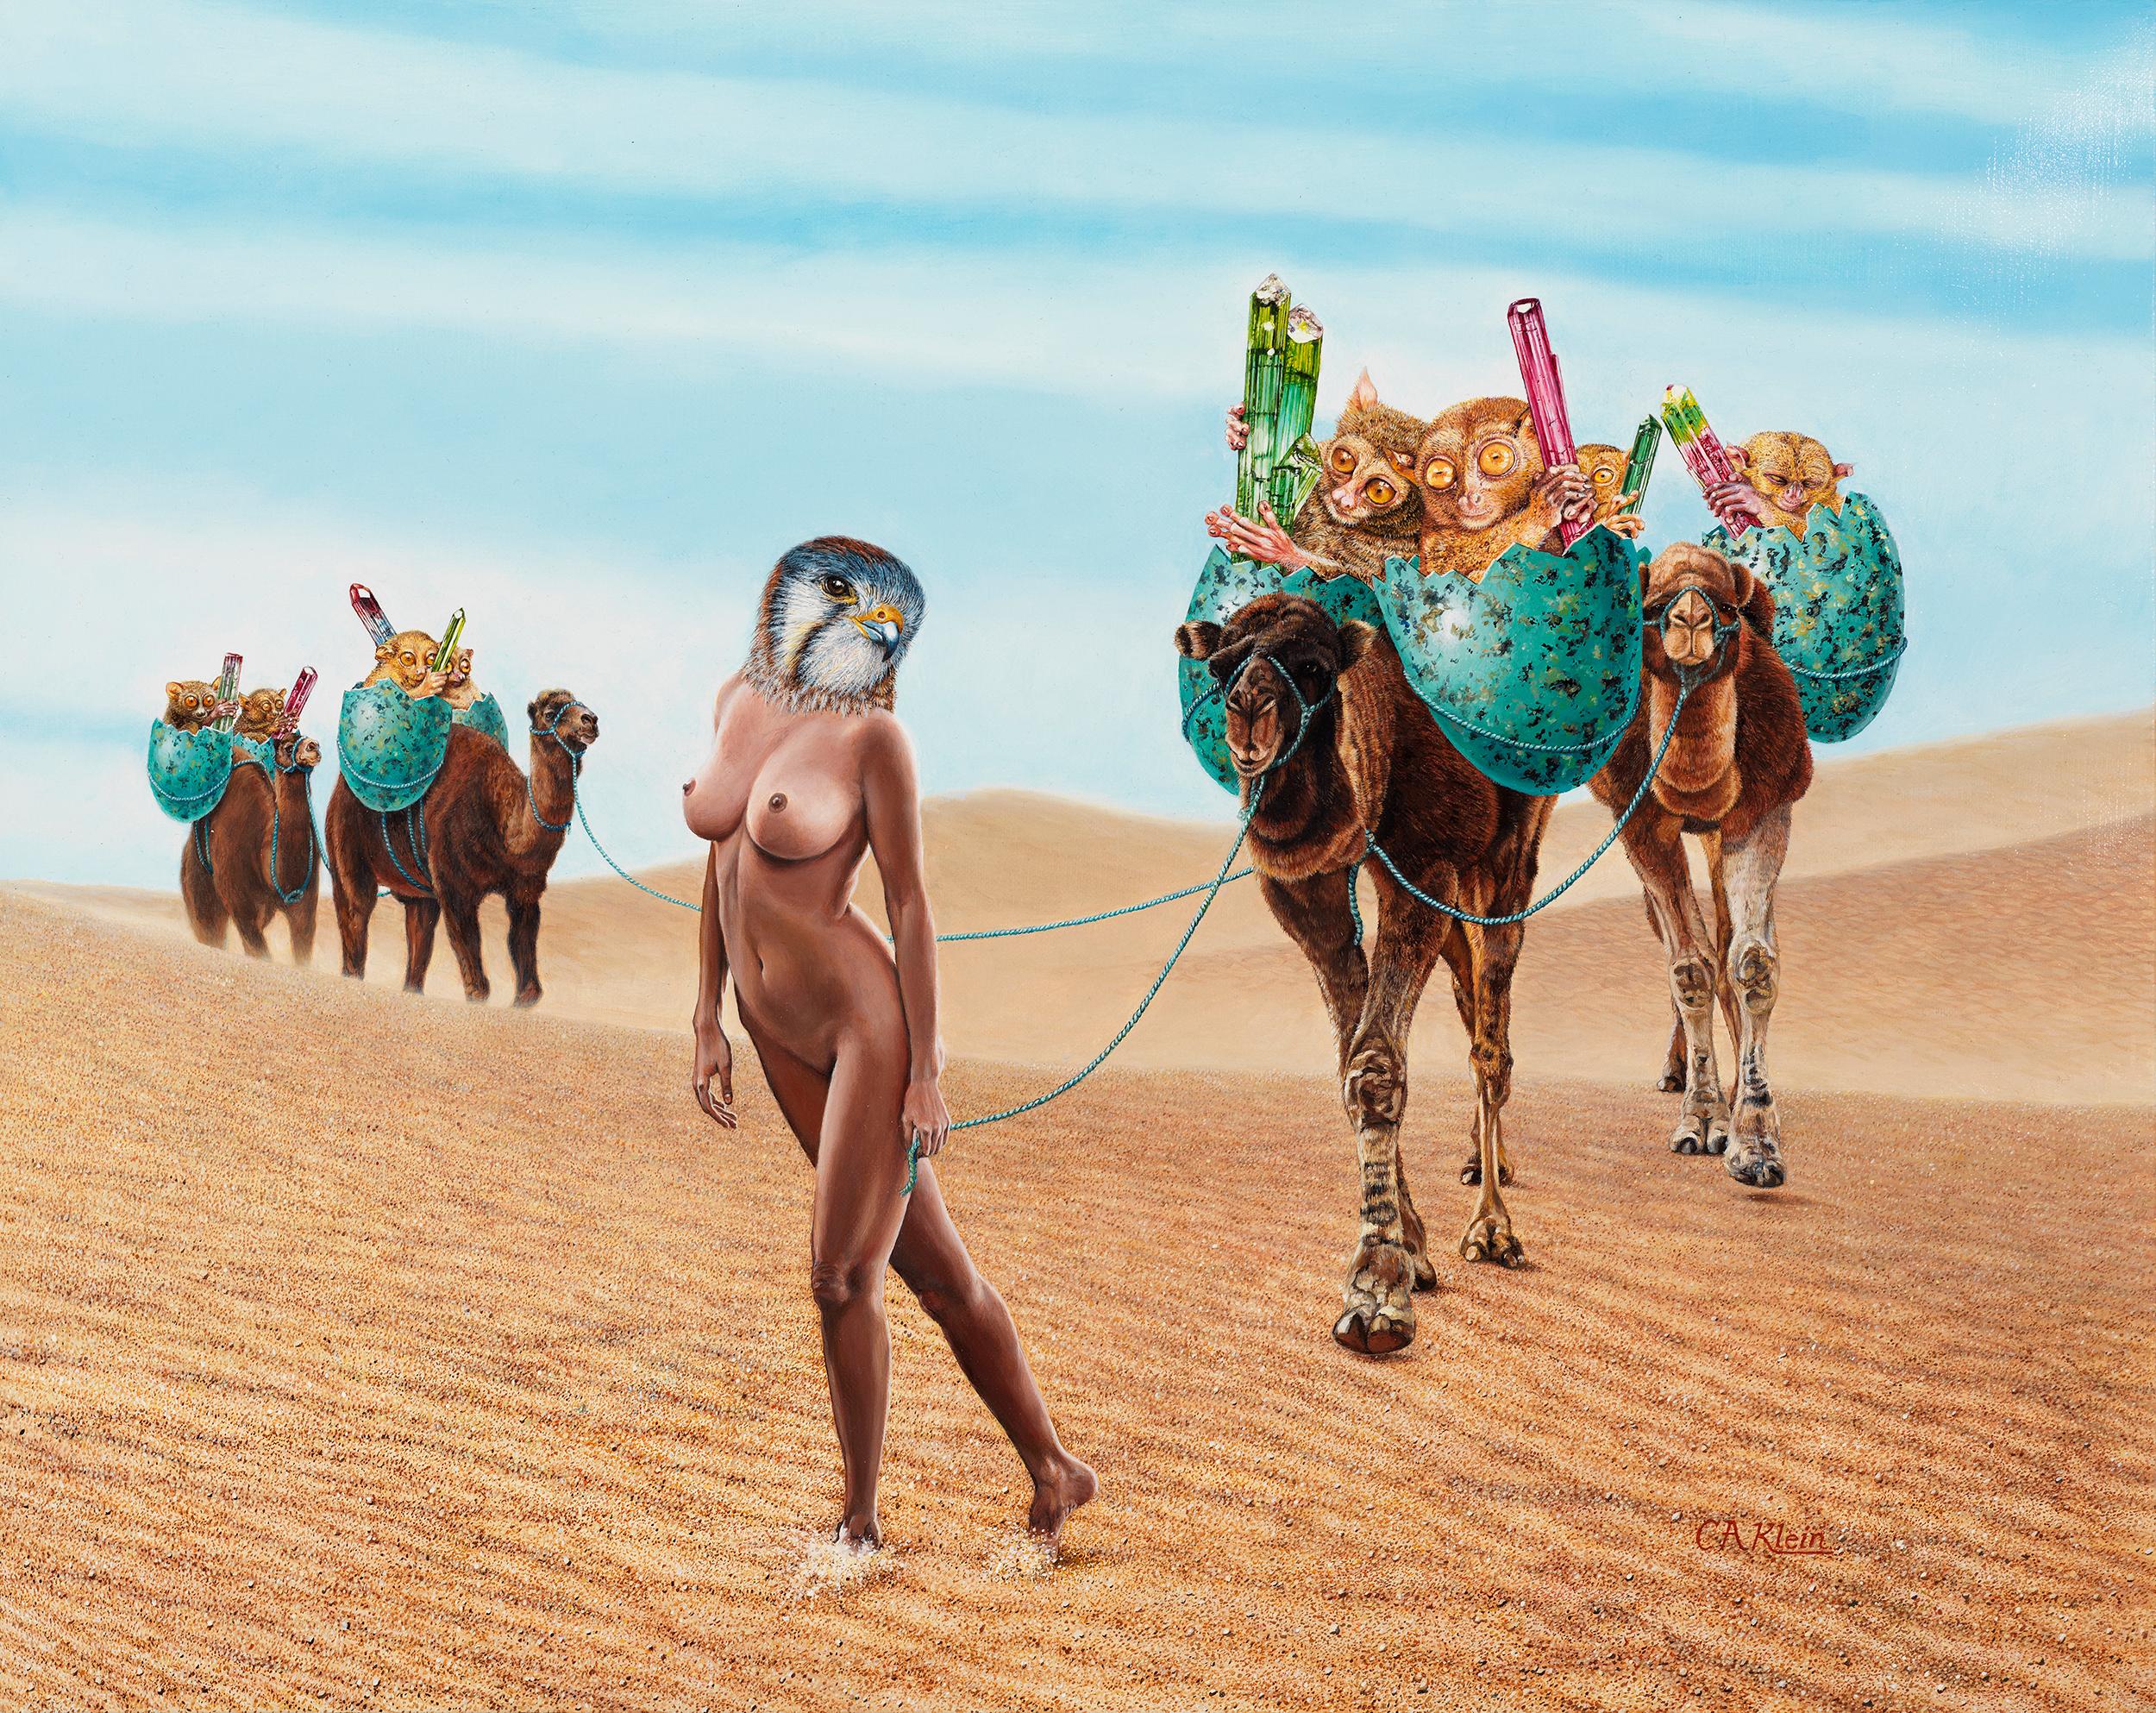 Best of Naked women in the desert